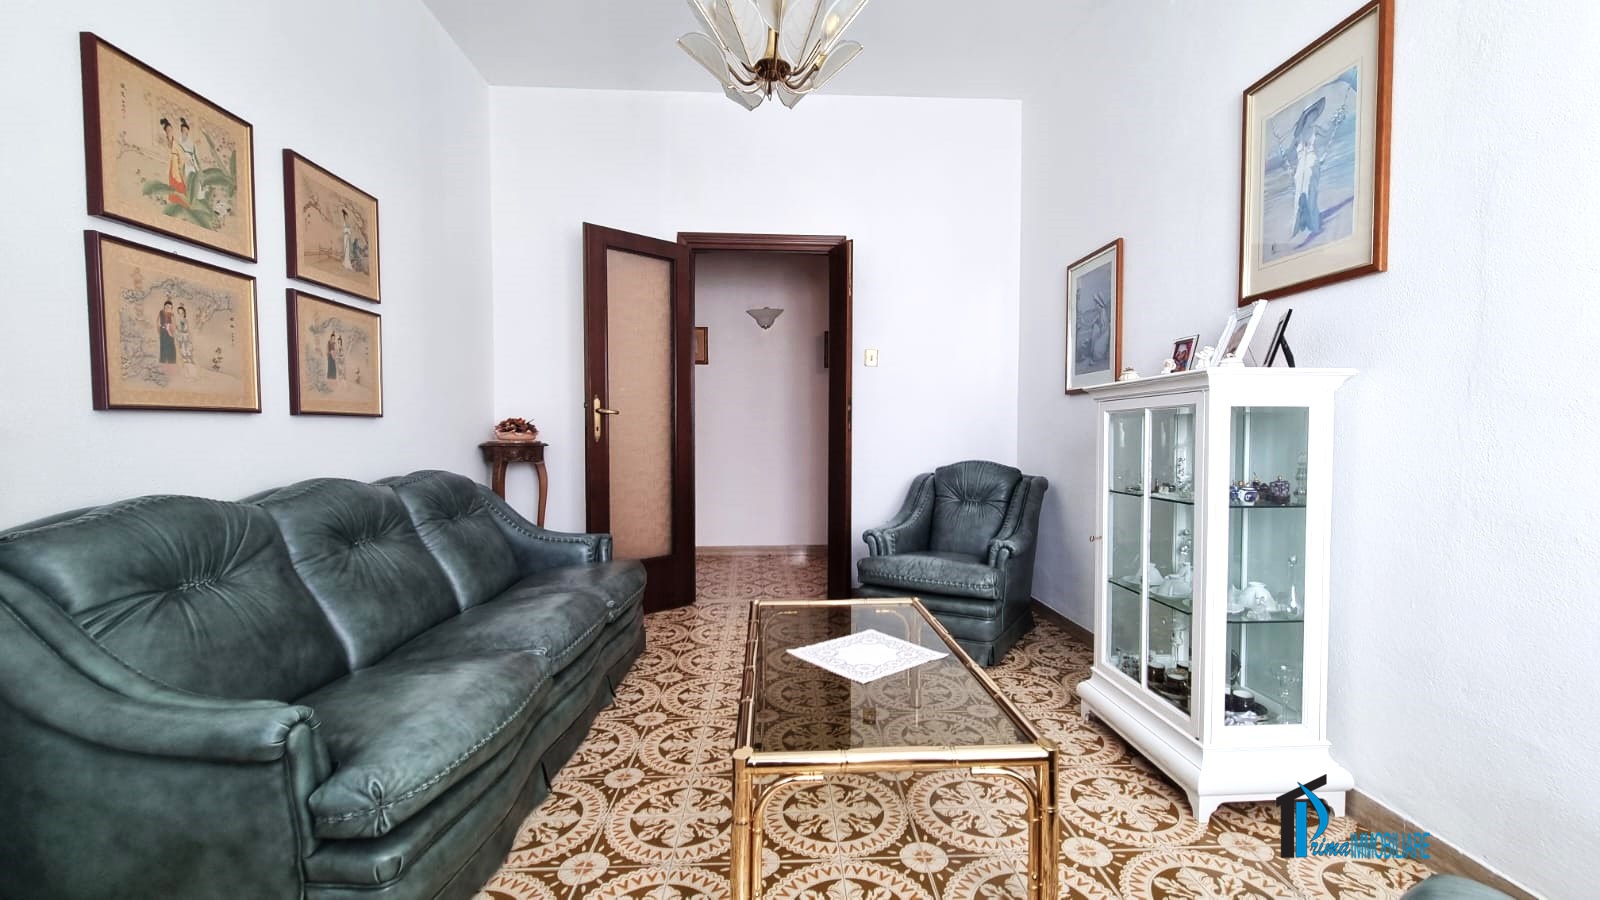 Appartamento in vendita a Terni, 4 locali, prezzo € 95.000 | PortaleAgenzieImmobiliari.it